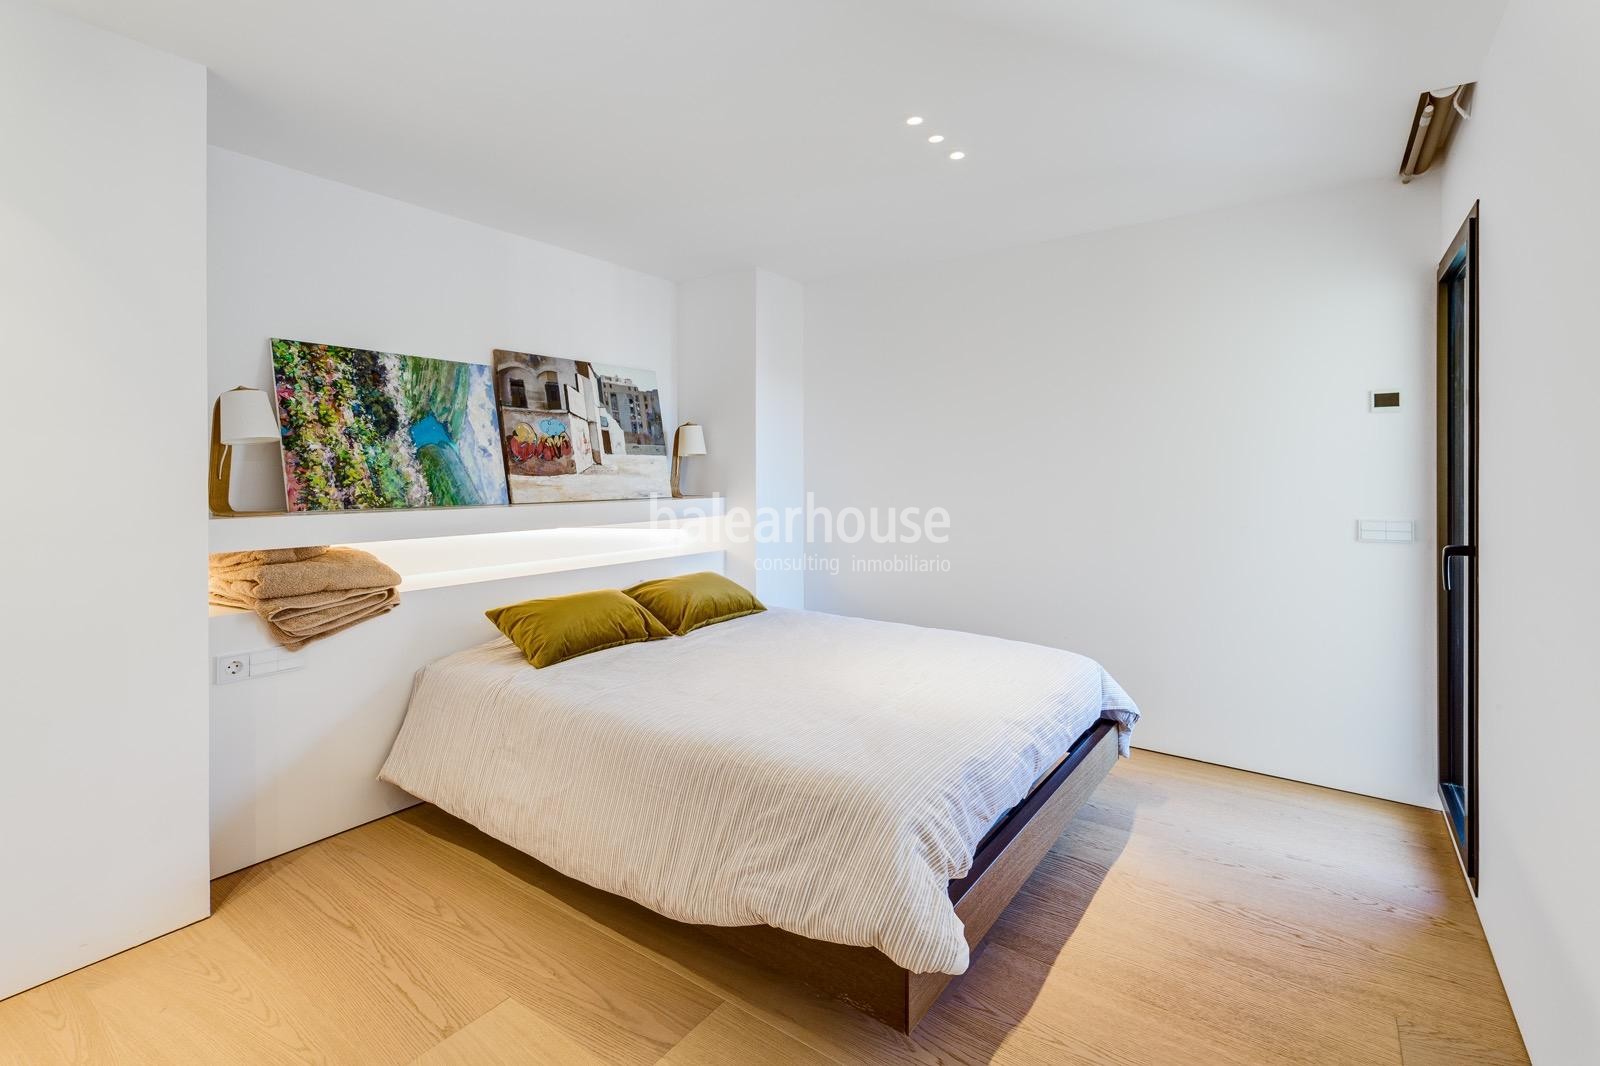 Wunderschöne große renovierte Wohnung im Zentrum von Palma mit modernem Design und hoher Qualität.